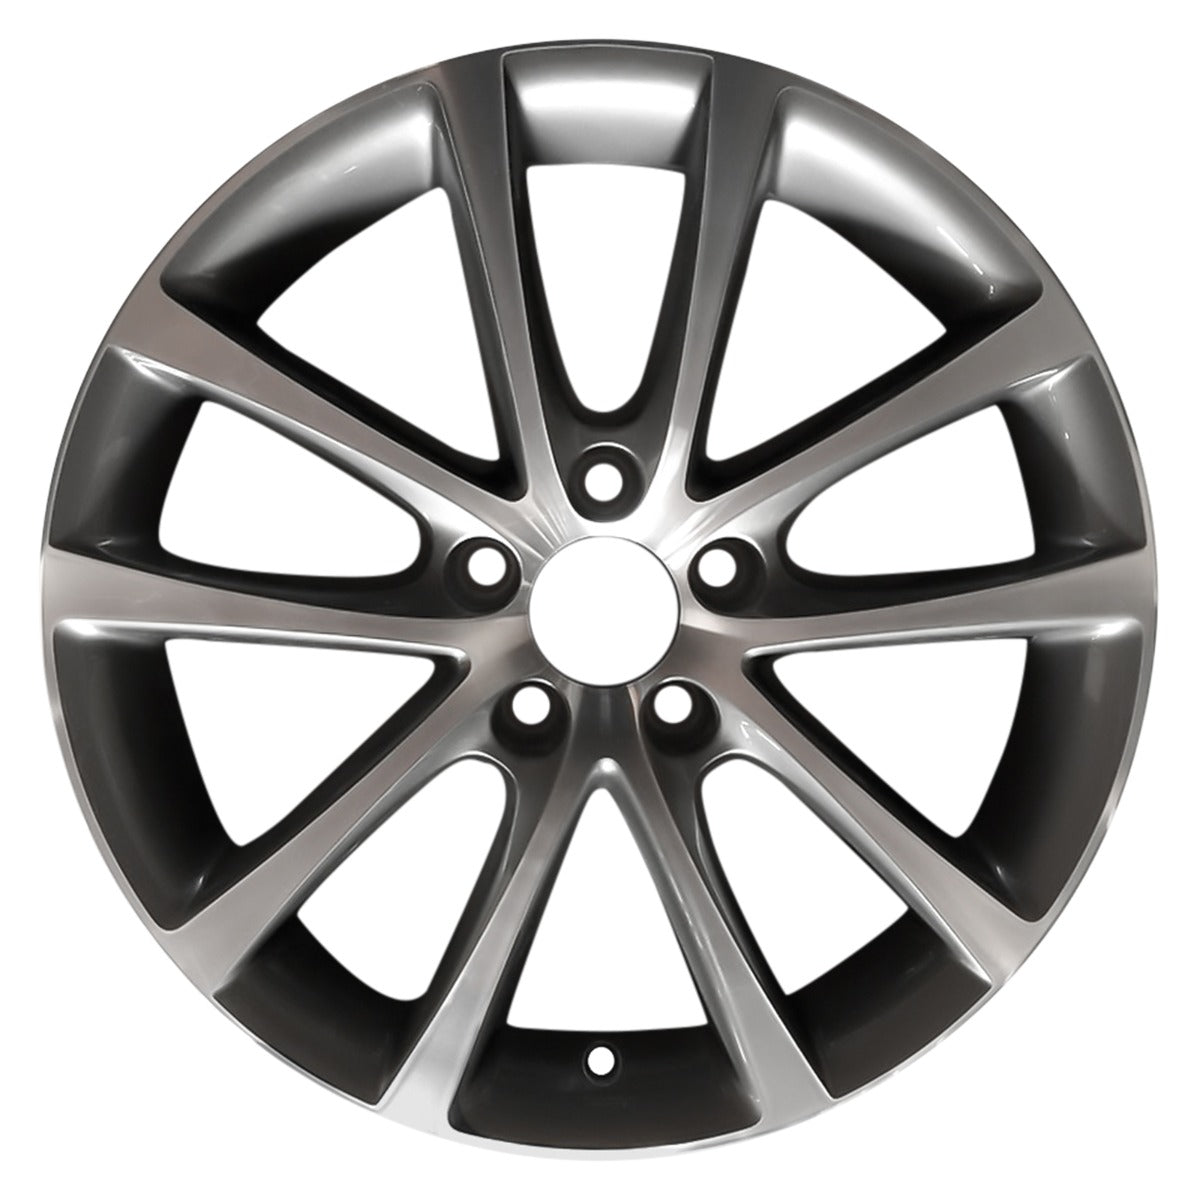 2013 Volkswagen Passat 17" OEM Wheel Rim W98652MC